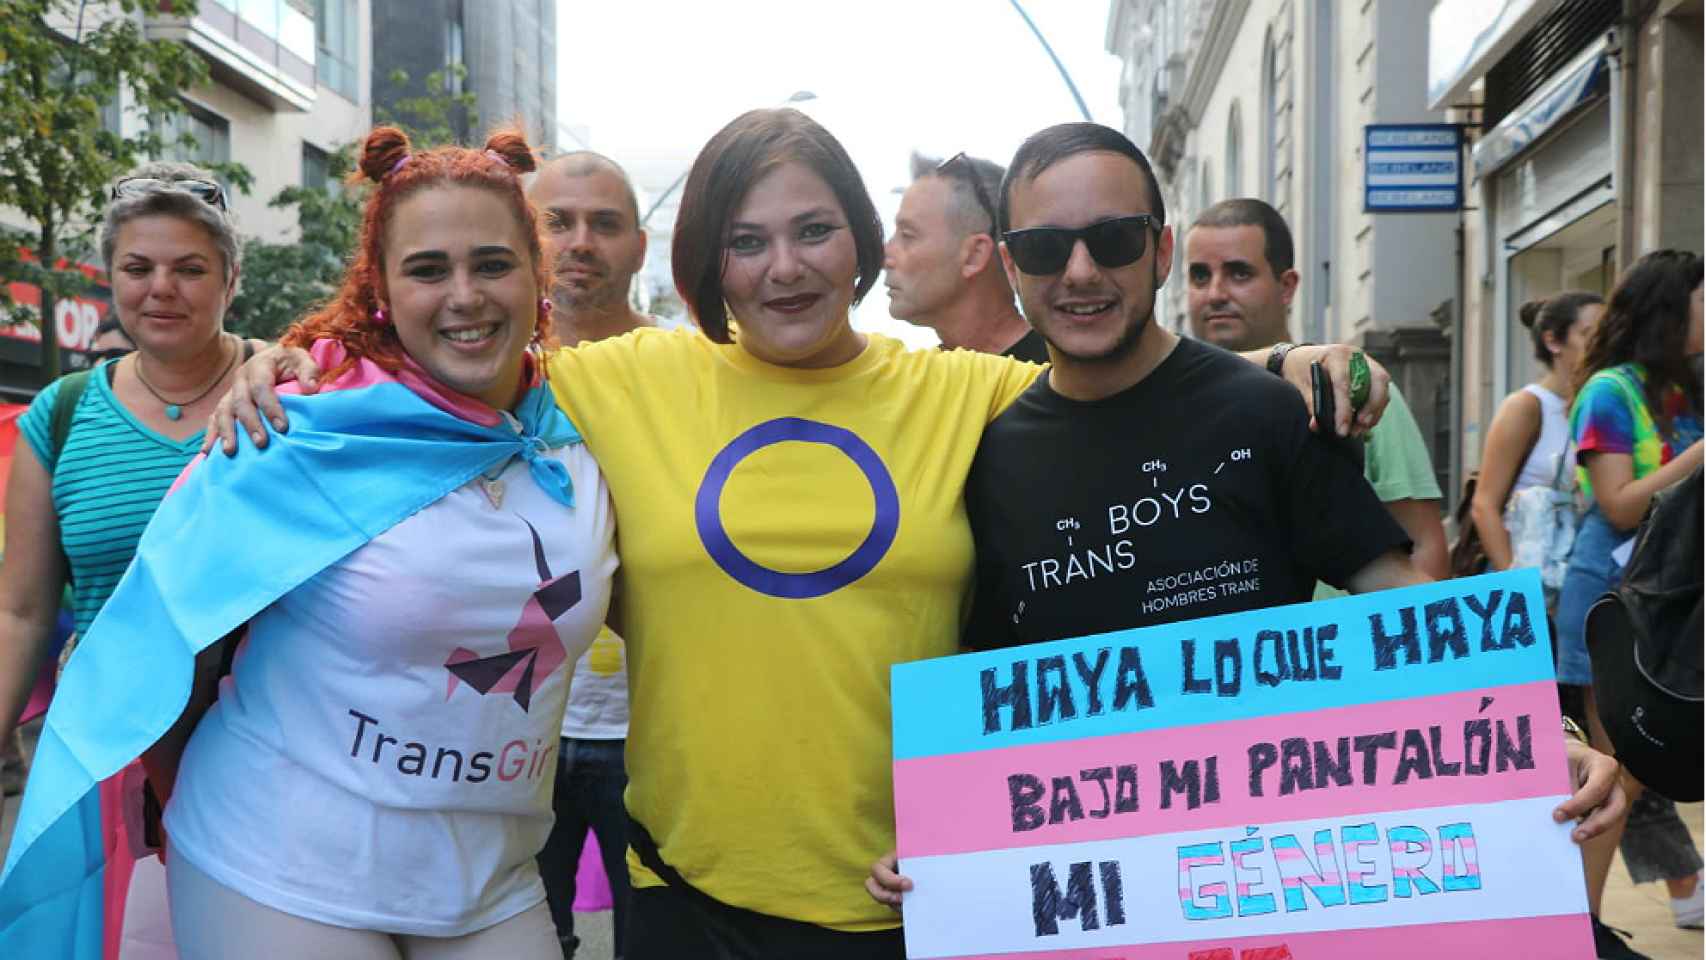 Clara junto a dos activistas, de Transboys y de Transgirls, en una manifestación en Santa Cruz de Tenerife.